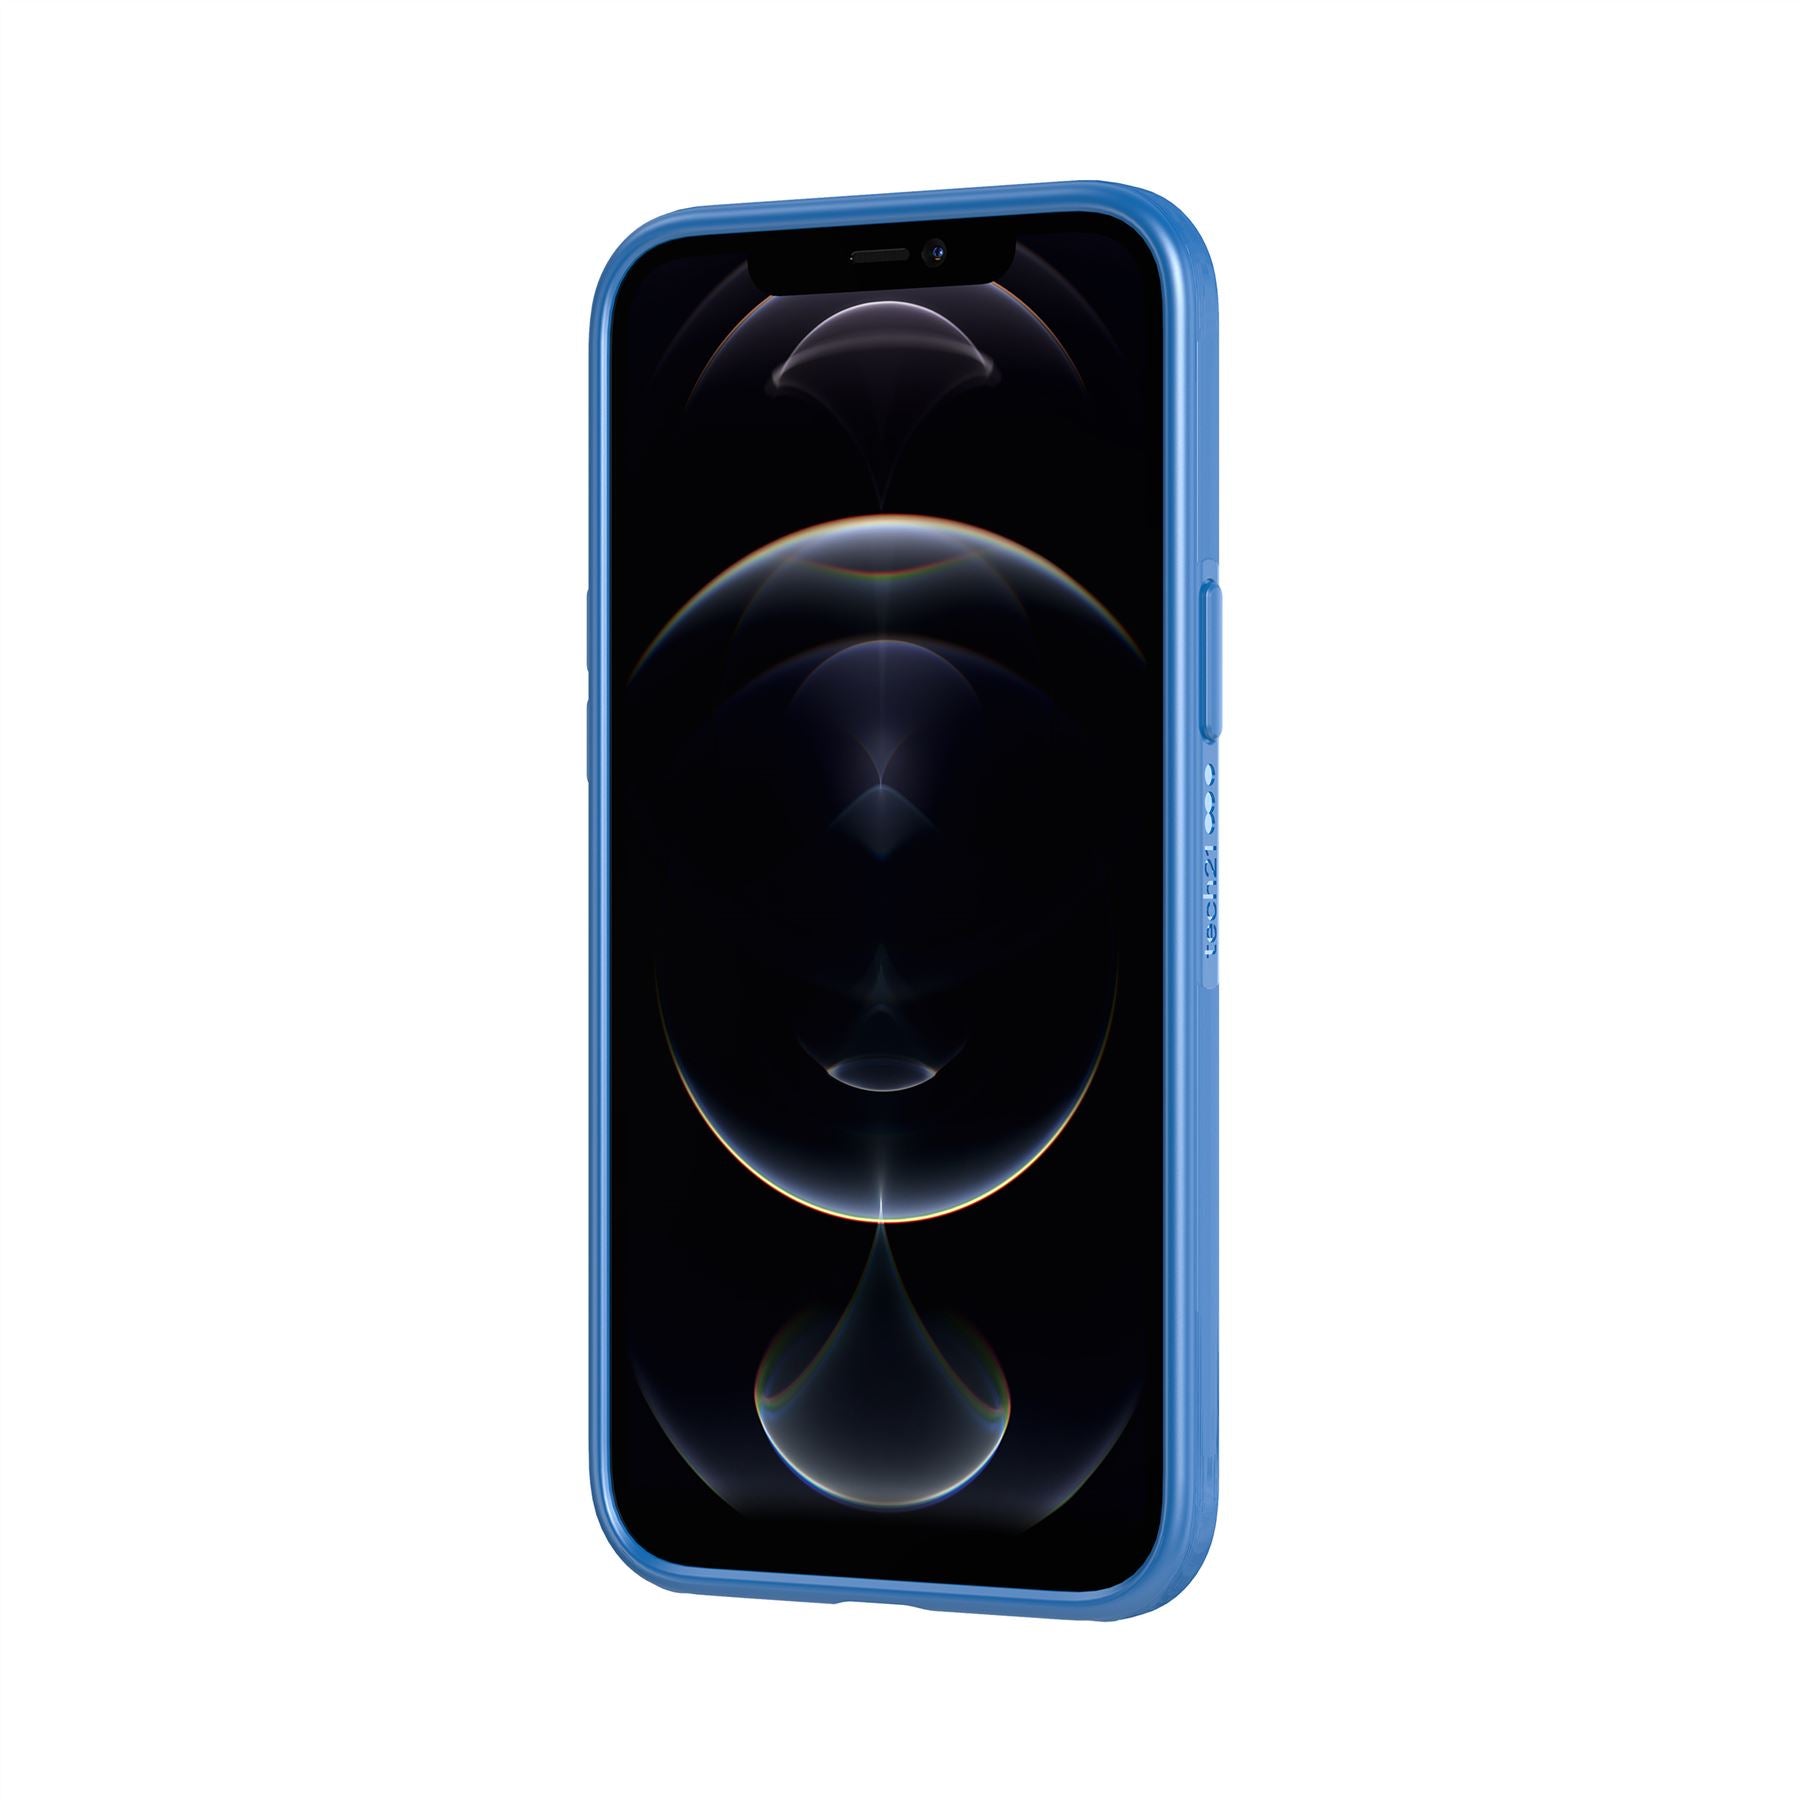 Evo Slim - Apple iPhone 12 Pro Max Case - Classic Blue